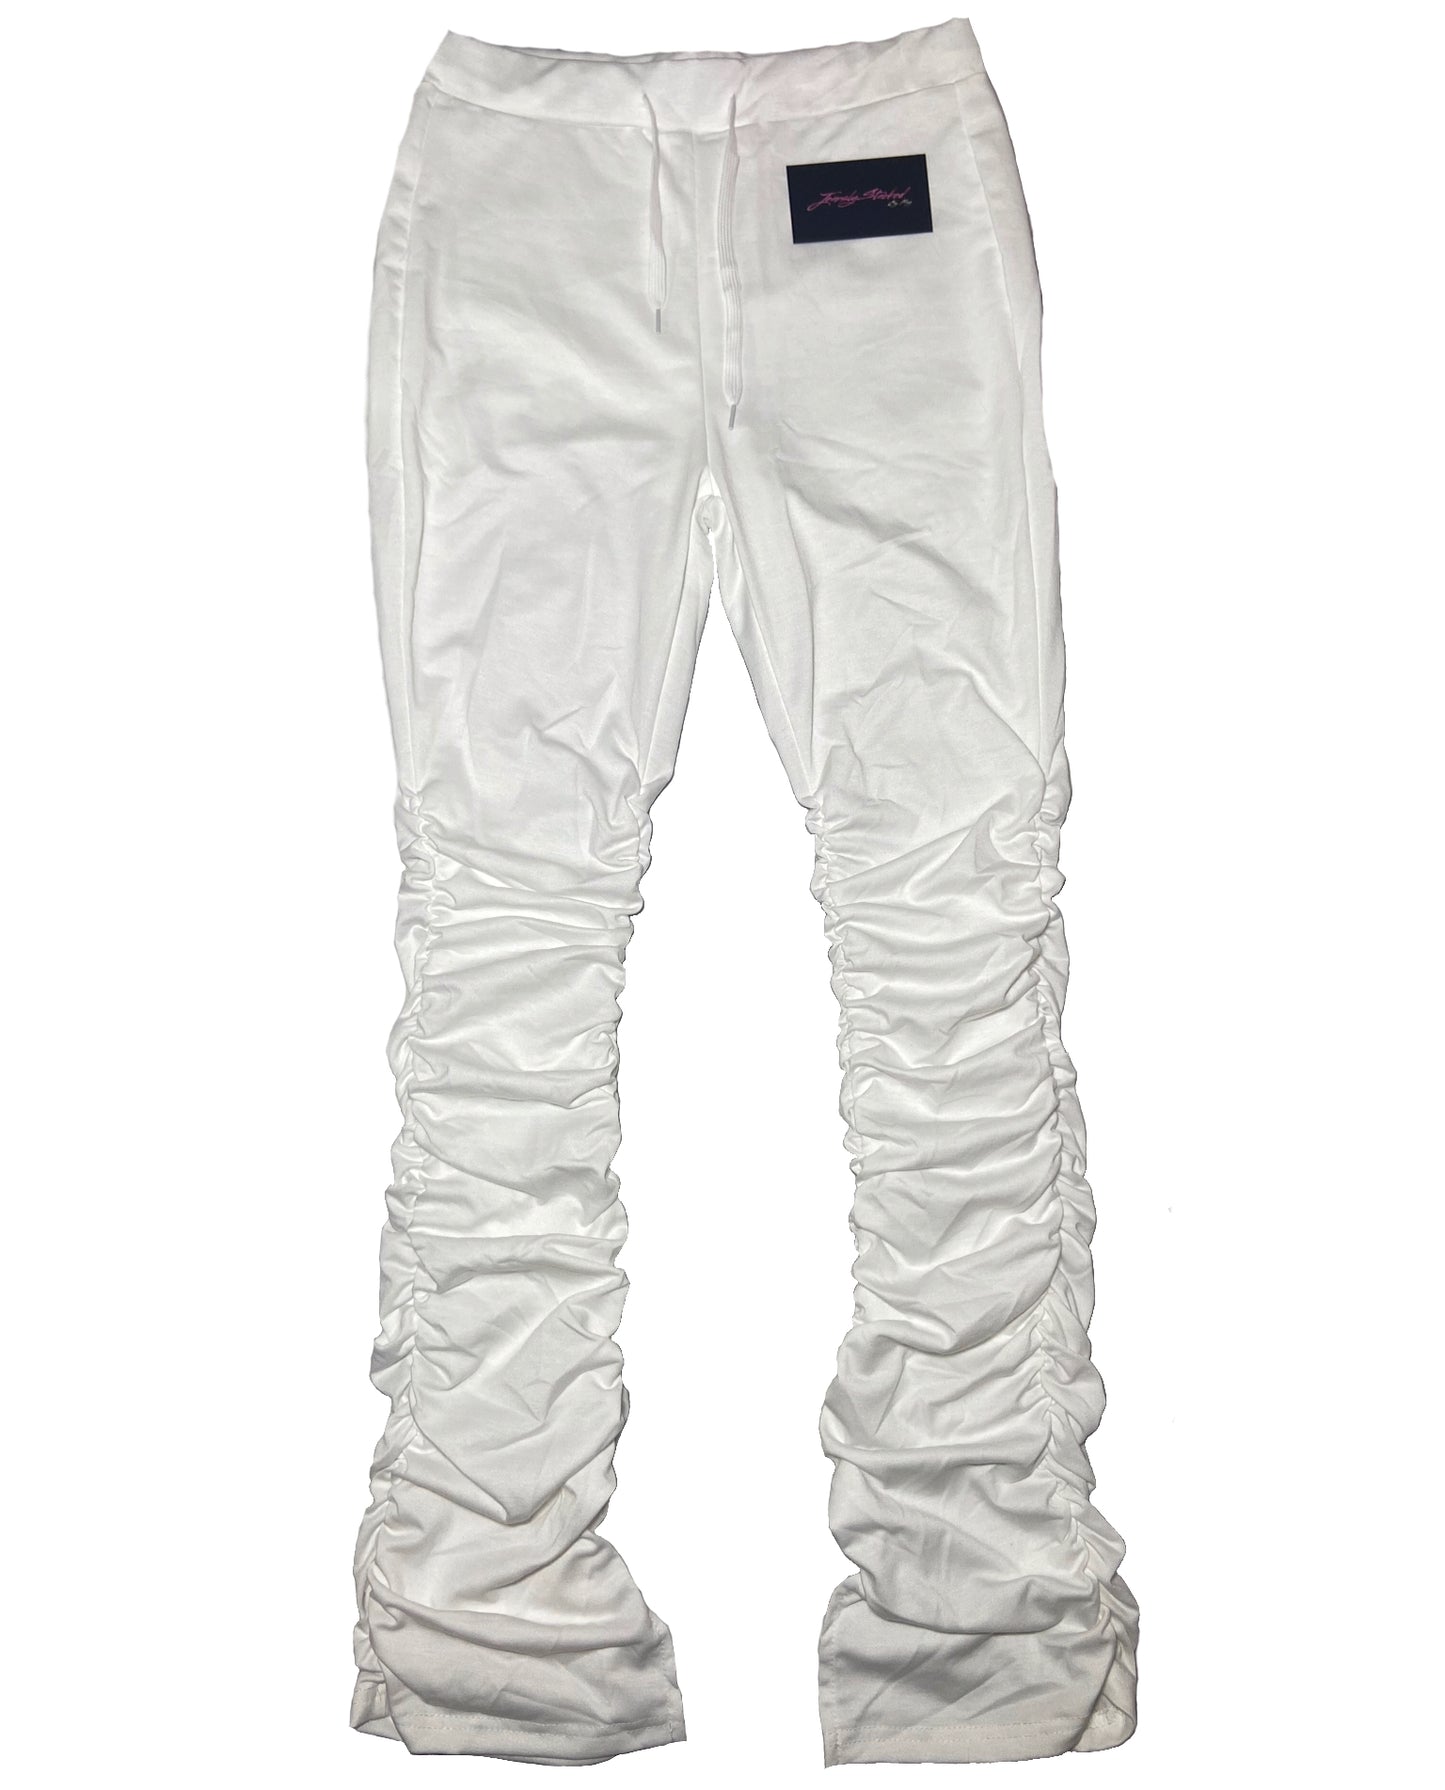 White stacked leggings